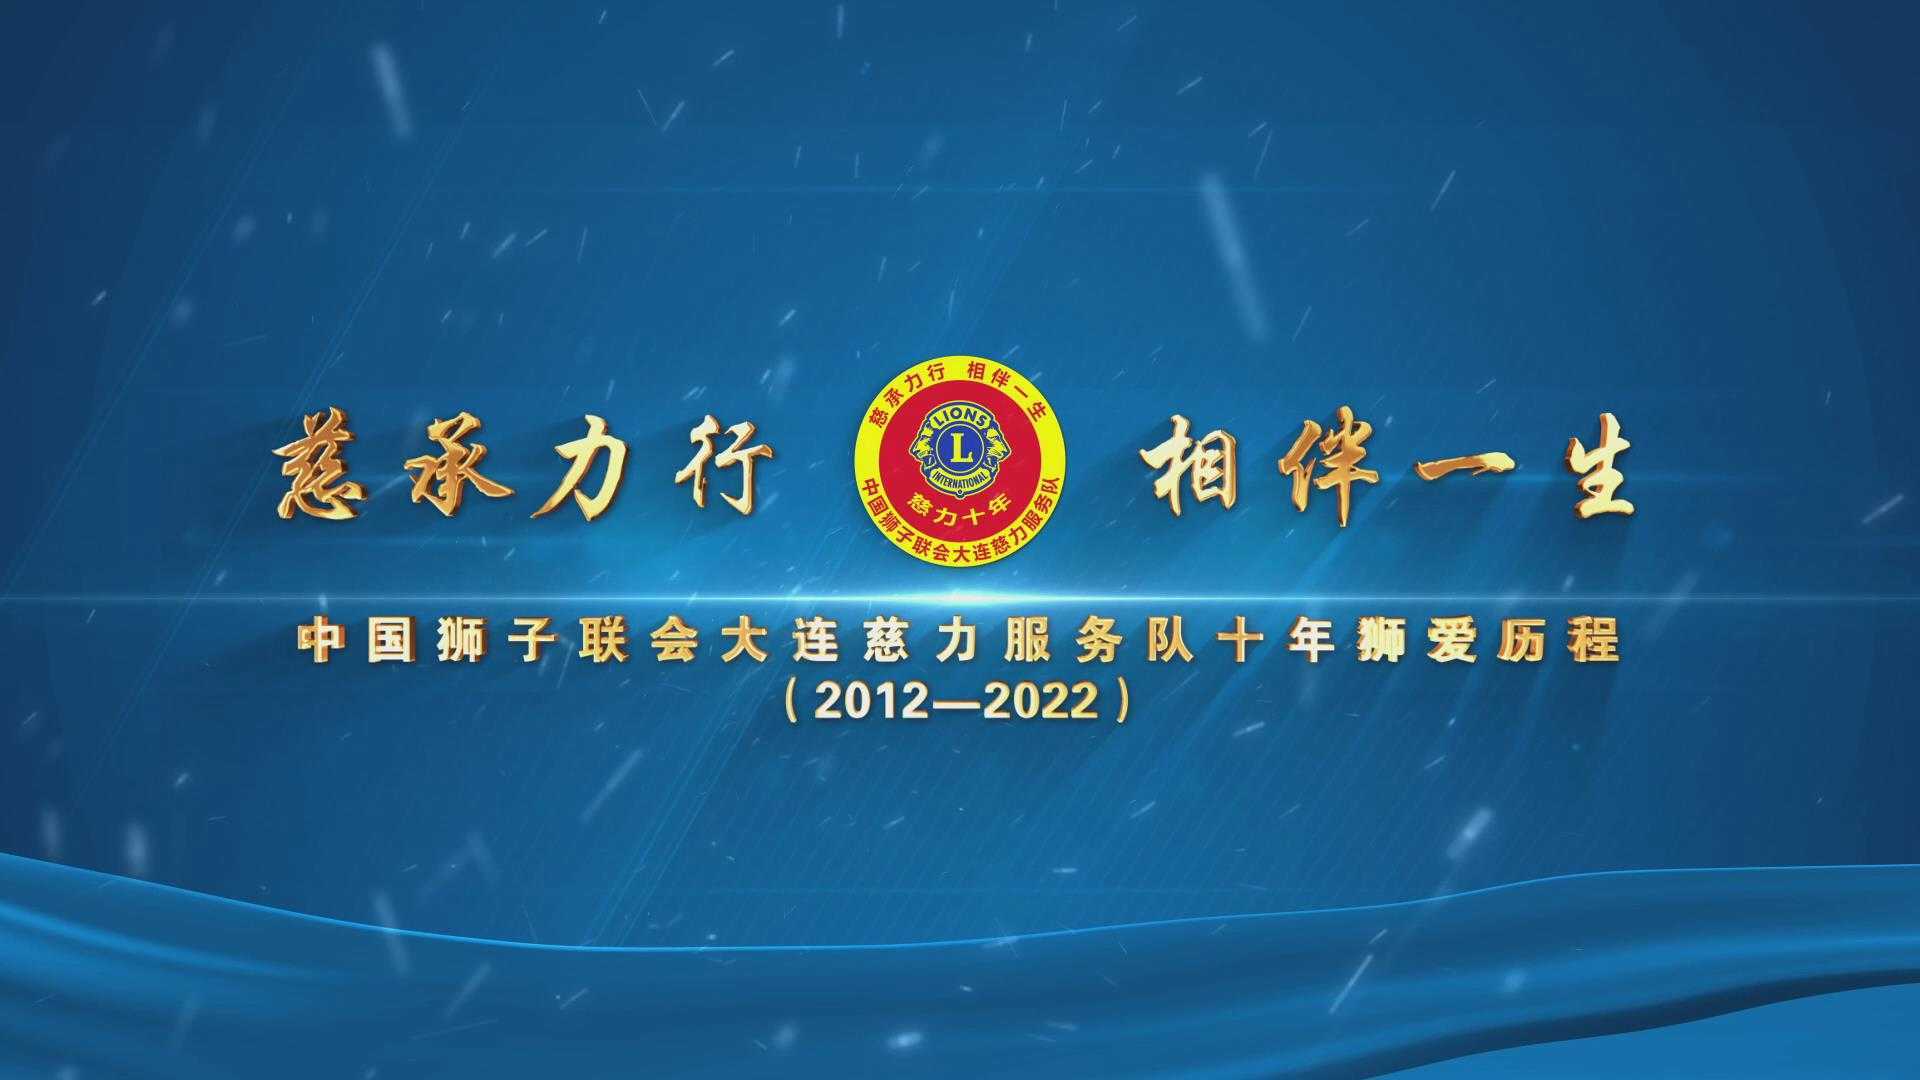 慈承力行 相伴一生  中国狮子联会大连慈力服务队十年狮爱历程